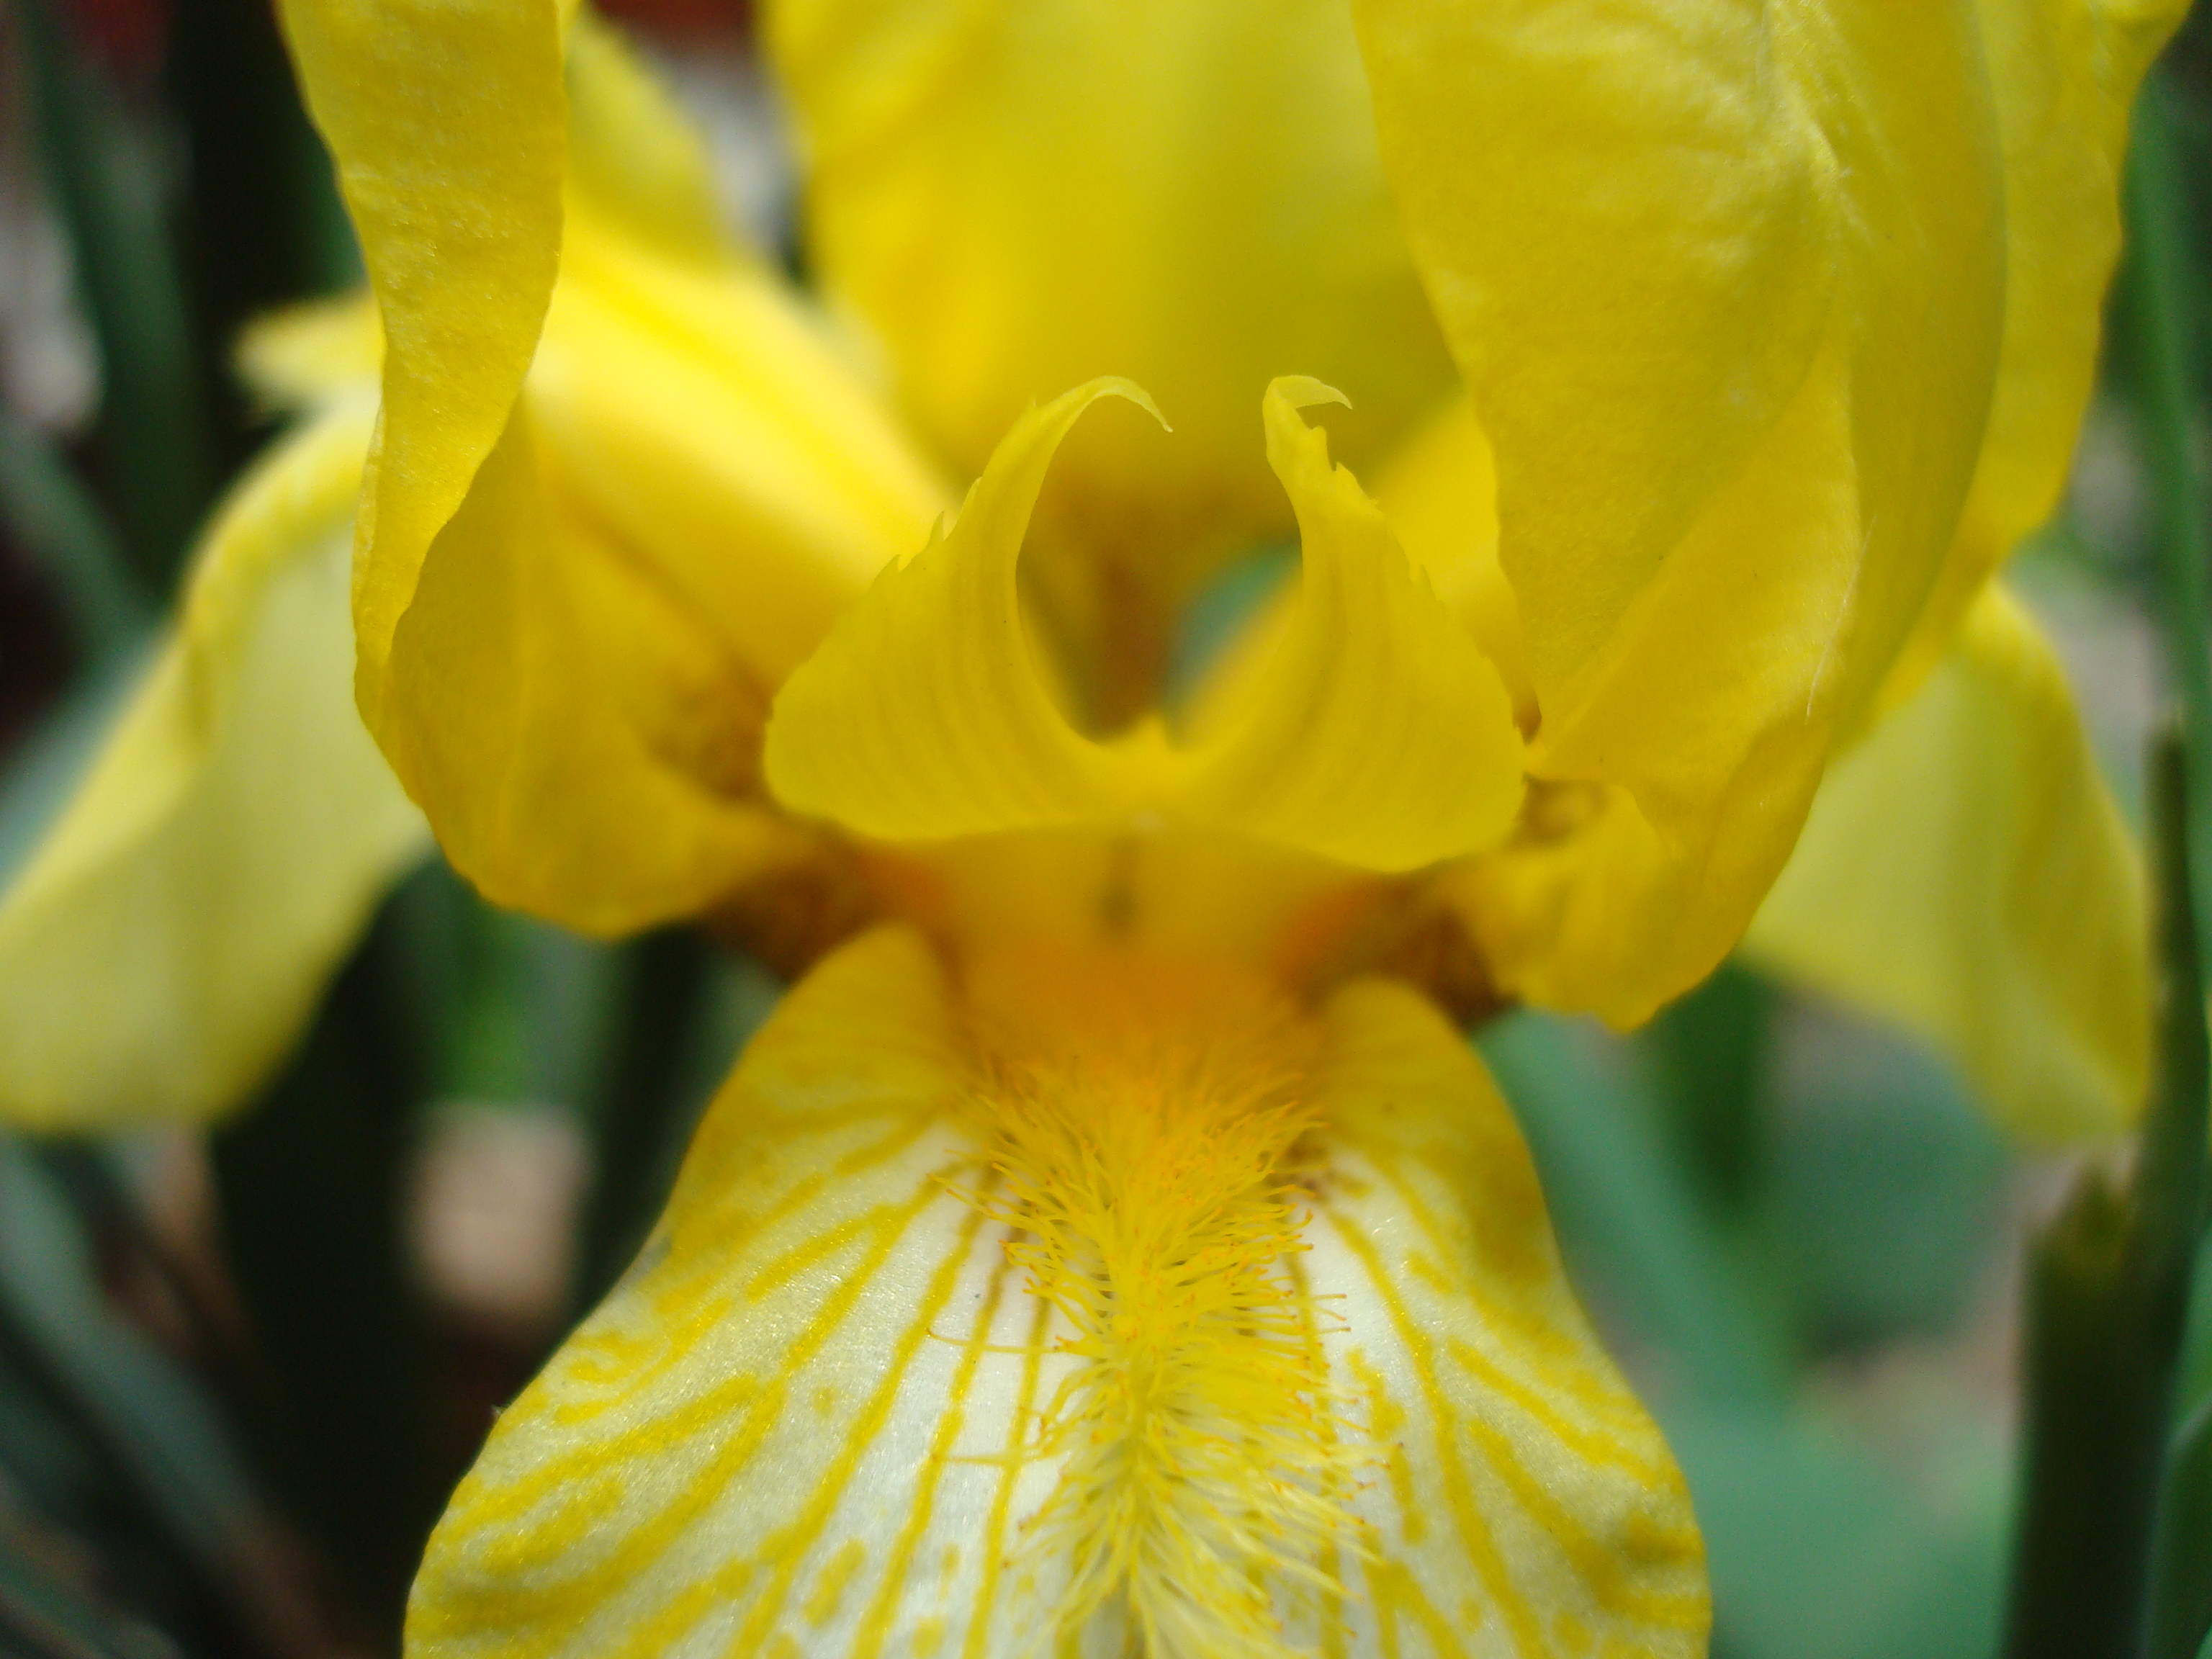 Yellow iris flower macro photo